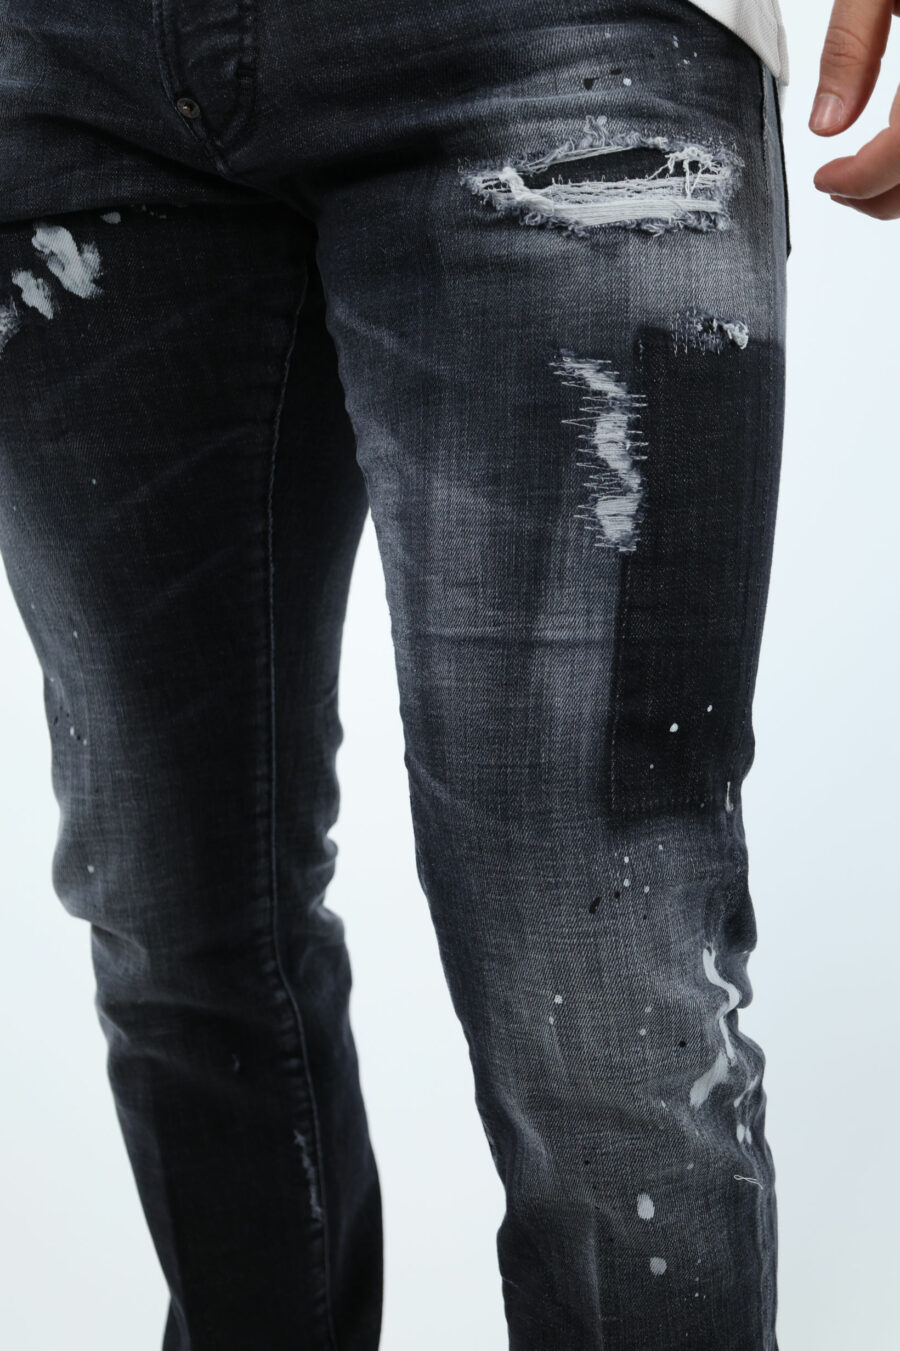 Pantalón vaquero negro "cool guy jean" con rotos y desgastado - 106755